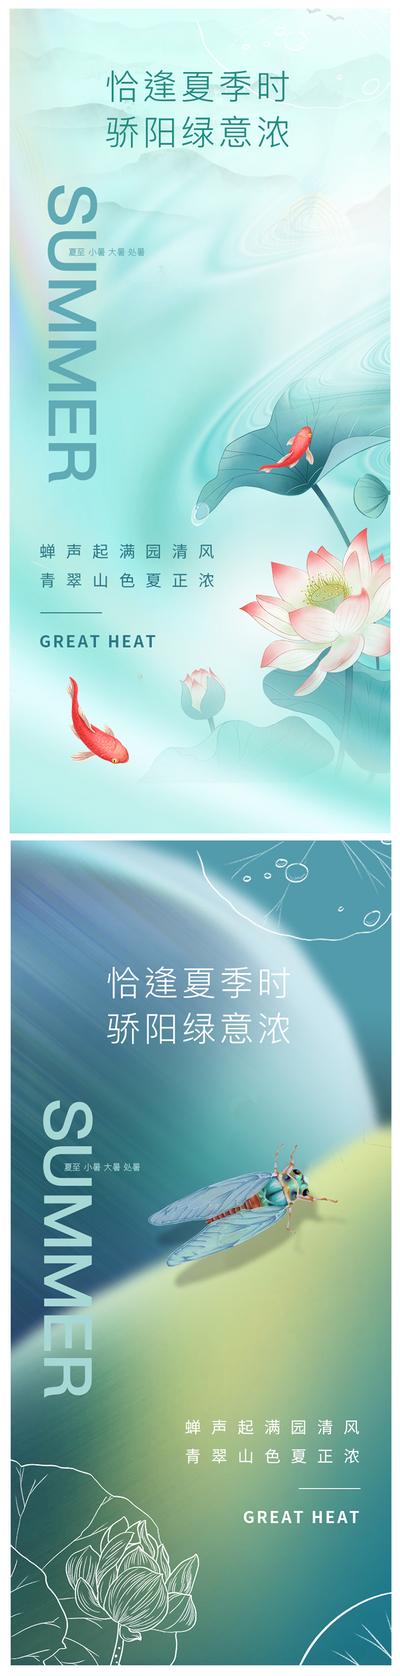 南门网 海报  二十四节气 夏至 小暑 大暑 处暑 荷花 鲤鱼 蝉